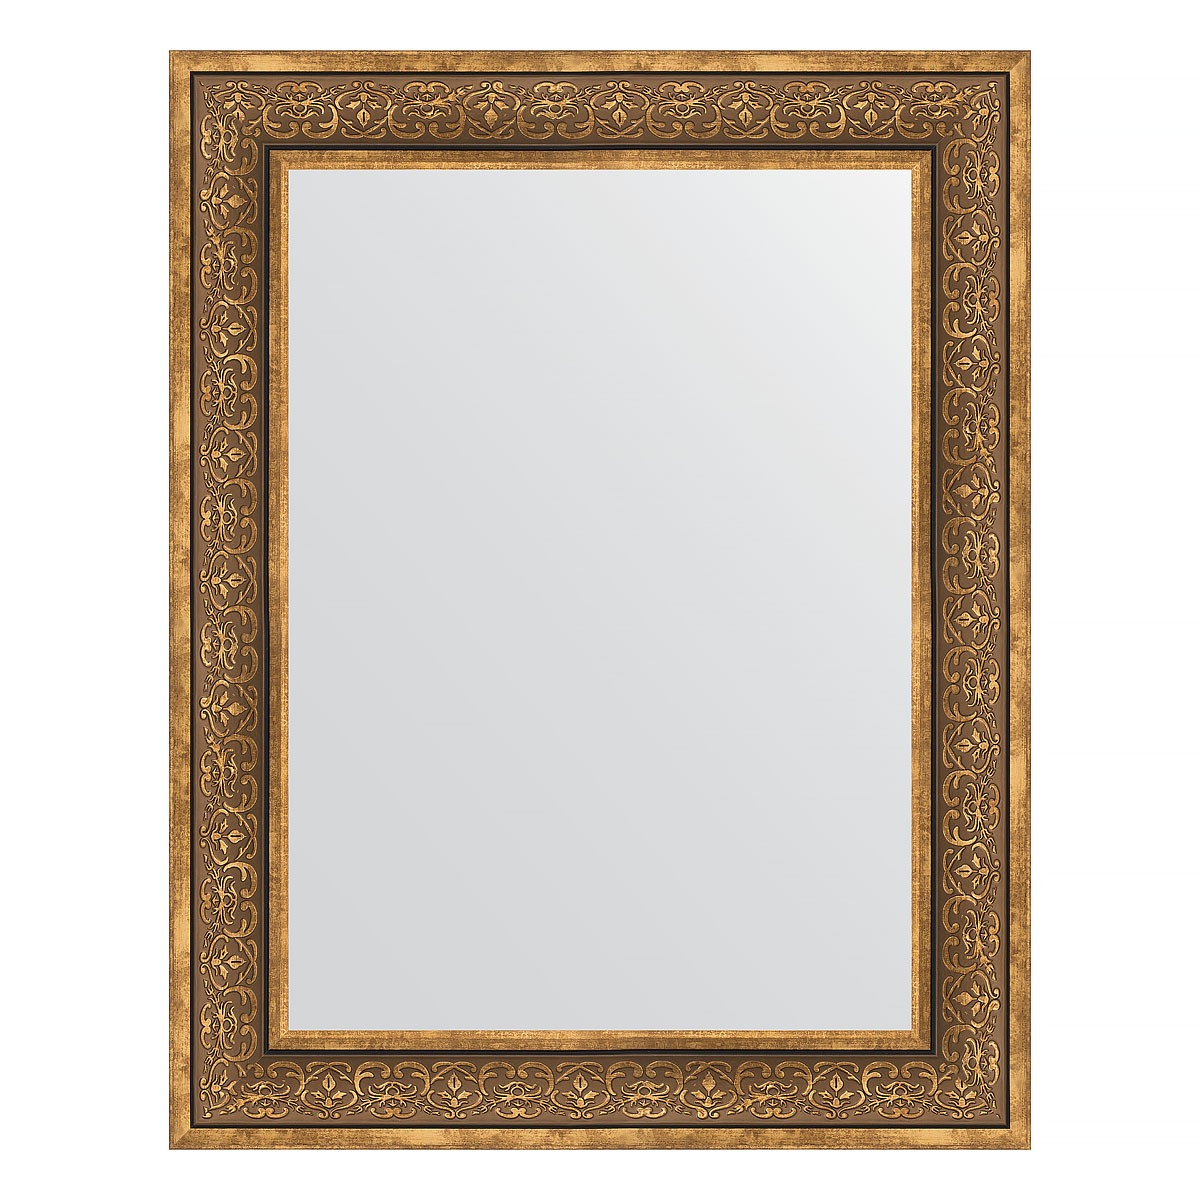 Зеркало в багетной раме Evoform вензель бронзовый 101 мм 73х93 см зеркало 79х109 см вензель бронзовый evoform exclusive by 3474